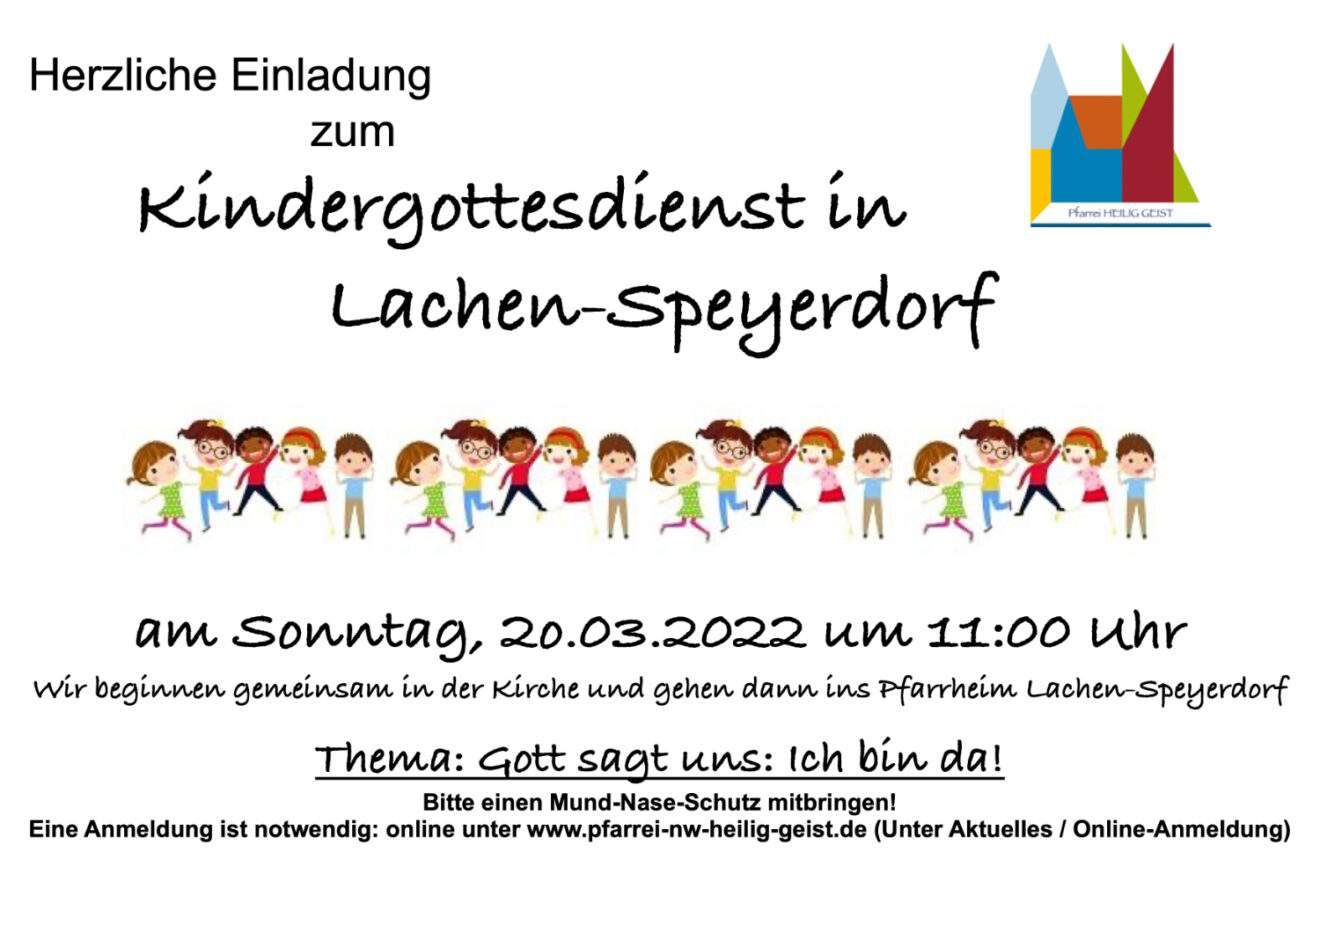 Herzliche Einladung zum Kindergottesdienst in Lachen-Speyerdorf